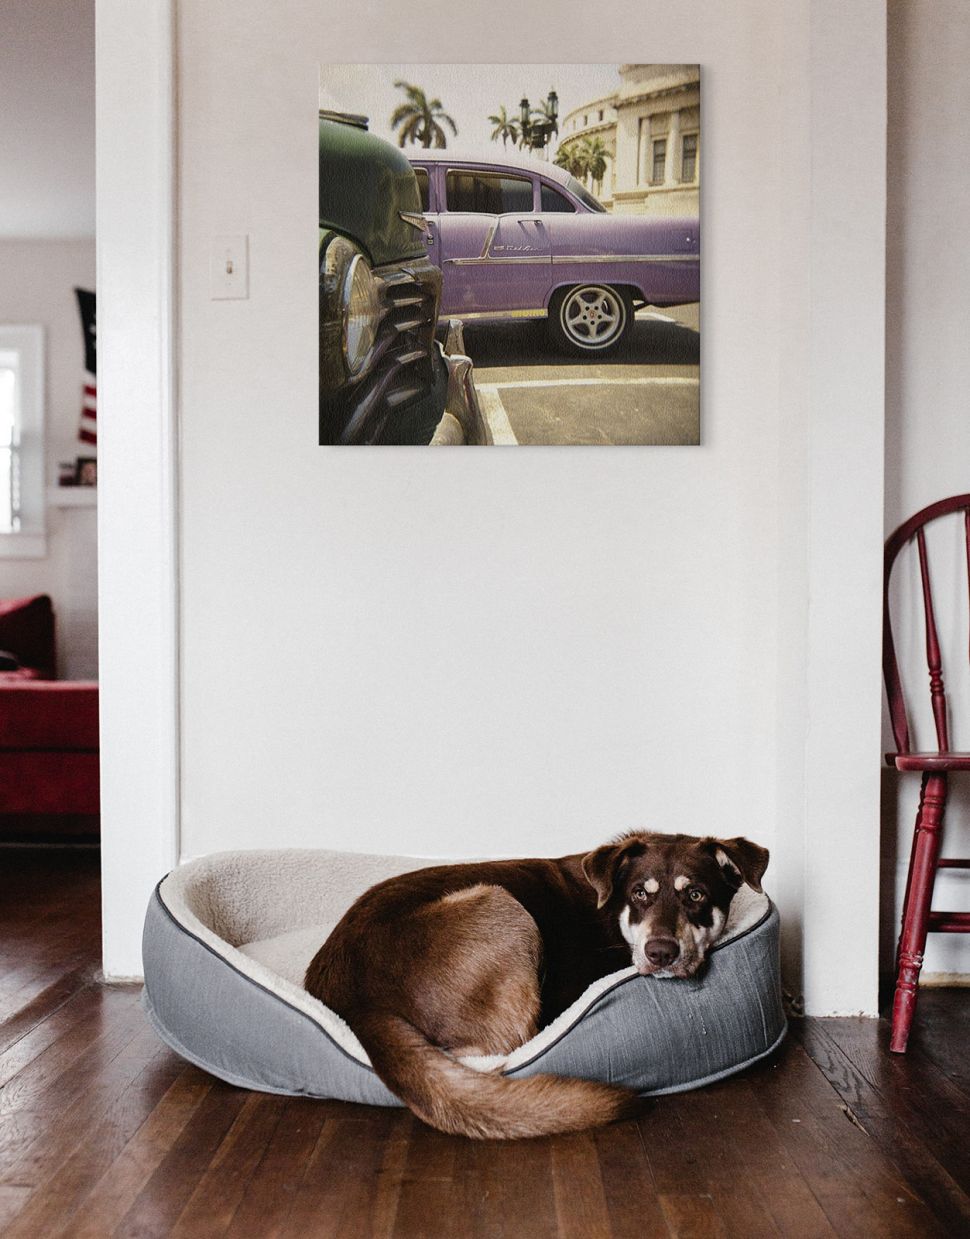 Obraz na płótnie przedstawiający fioletowy samochód powieszony w korytarzu na ścianie